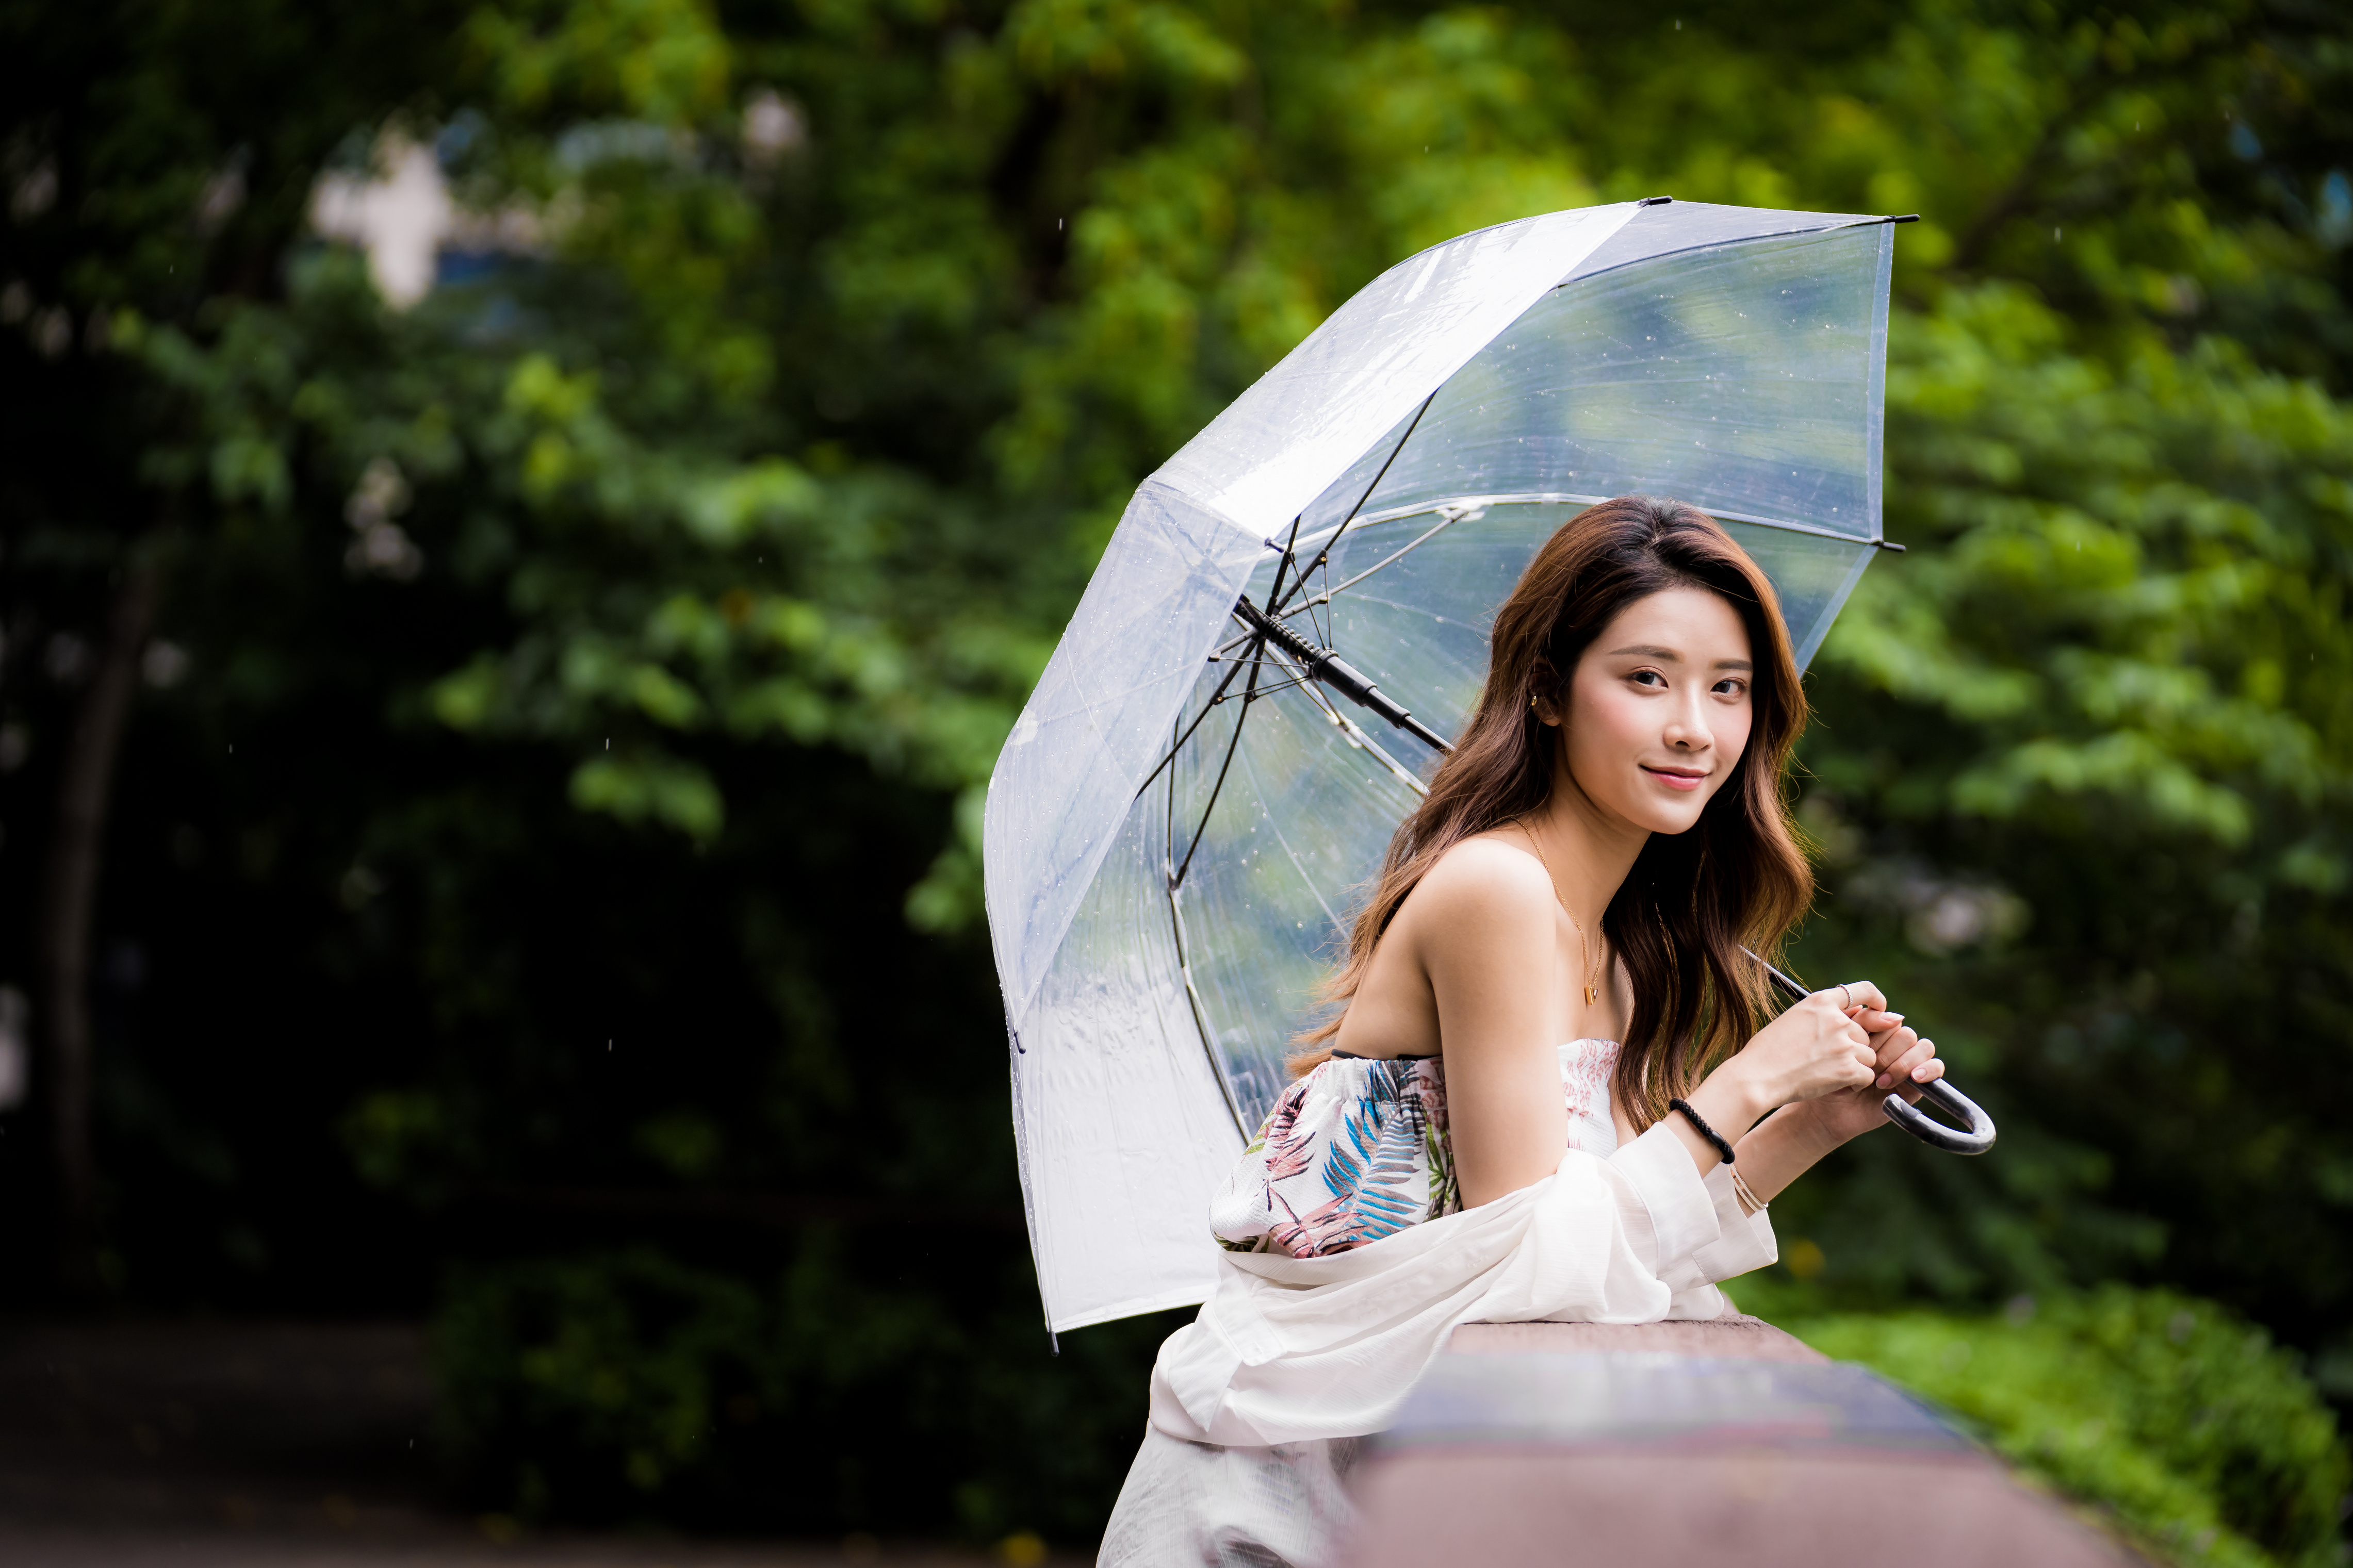 Картинка шатенки боке молодые женщины азиатки зонтик Взгляд 4562x3041 Шатенка Размытый фон девушка Девушки молодая женщина Азиаты азиатка Зонт зонтом смотрит смотрят